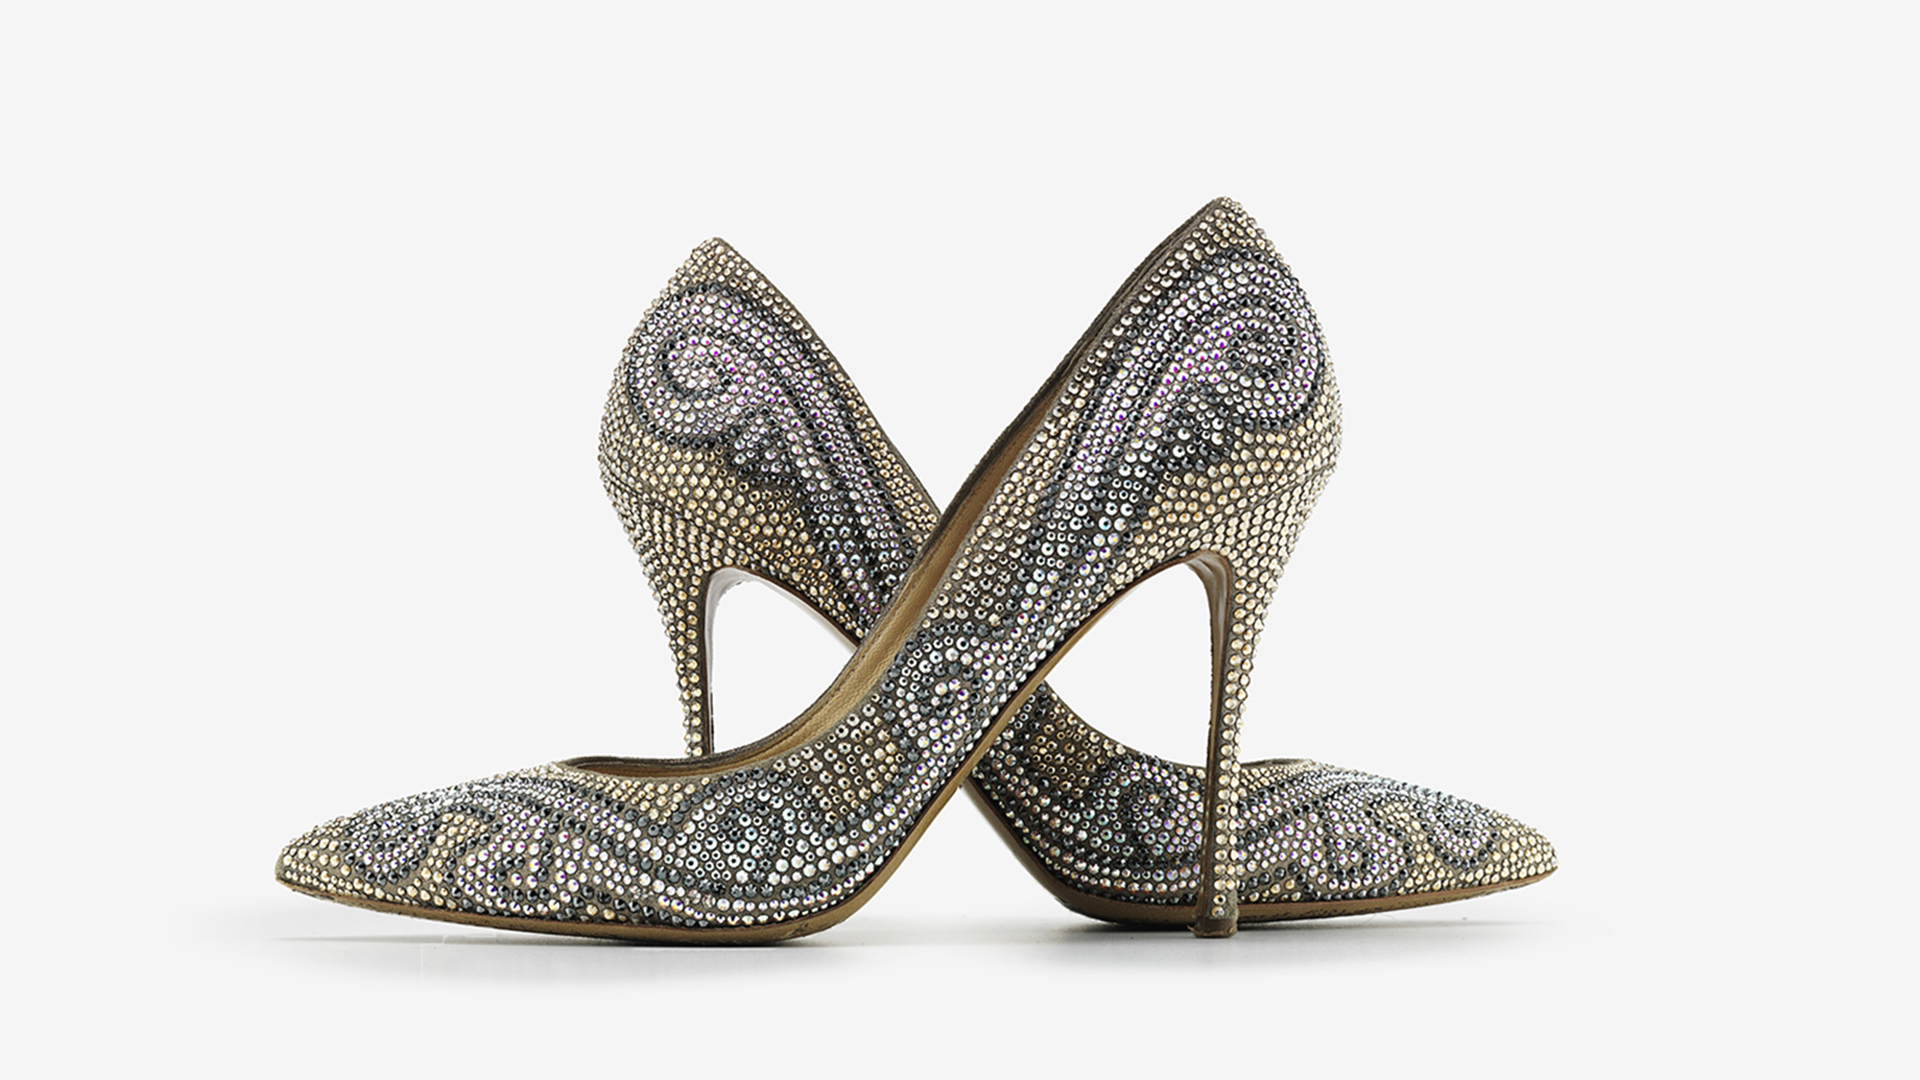 Why do women wear high heels? Blame enlightenment philosophy